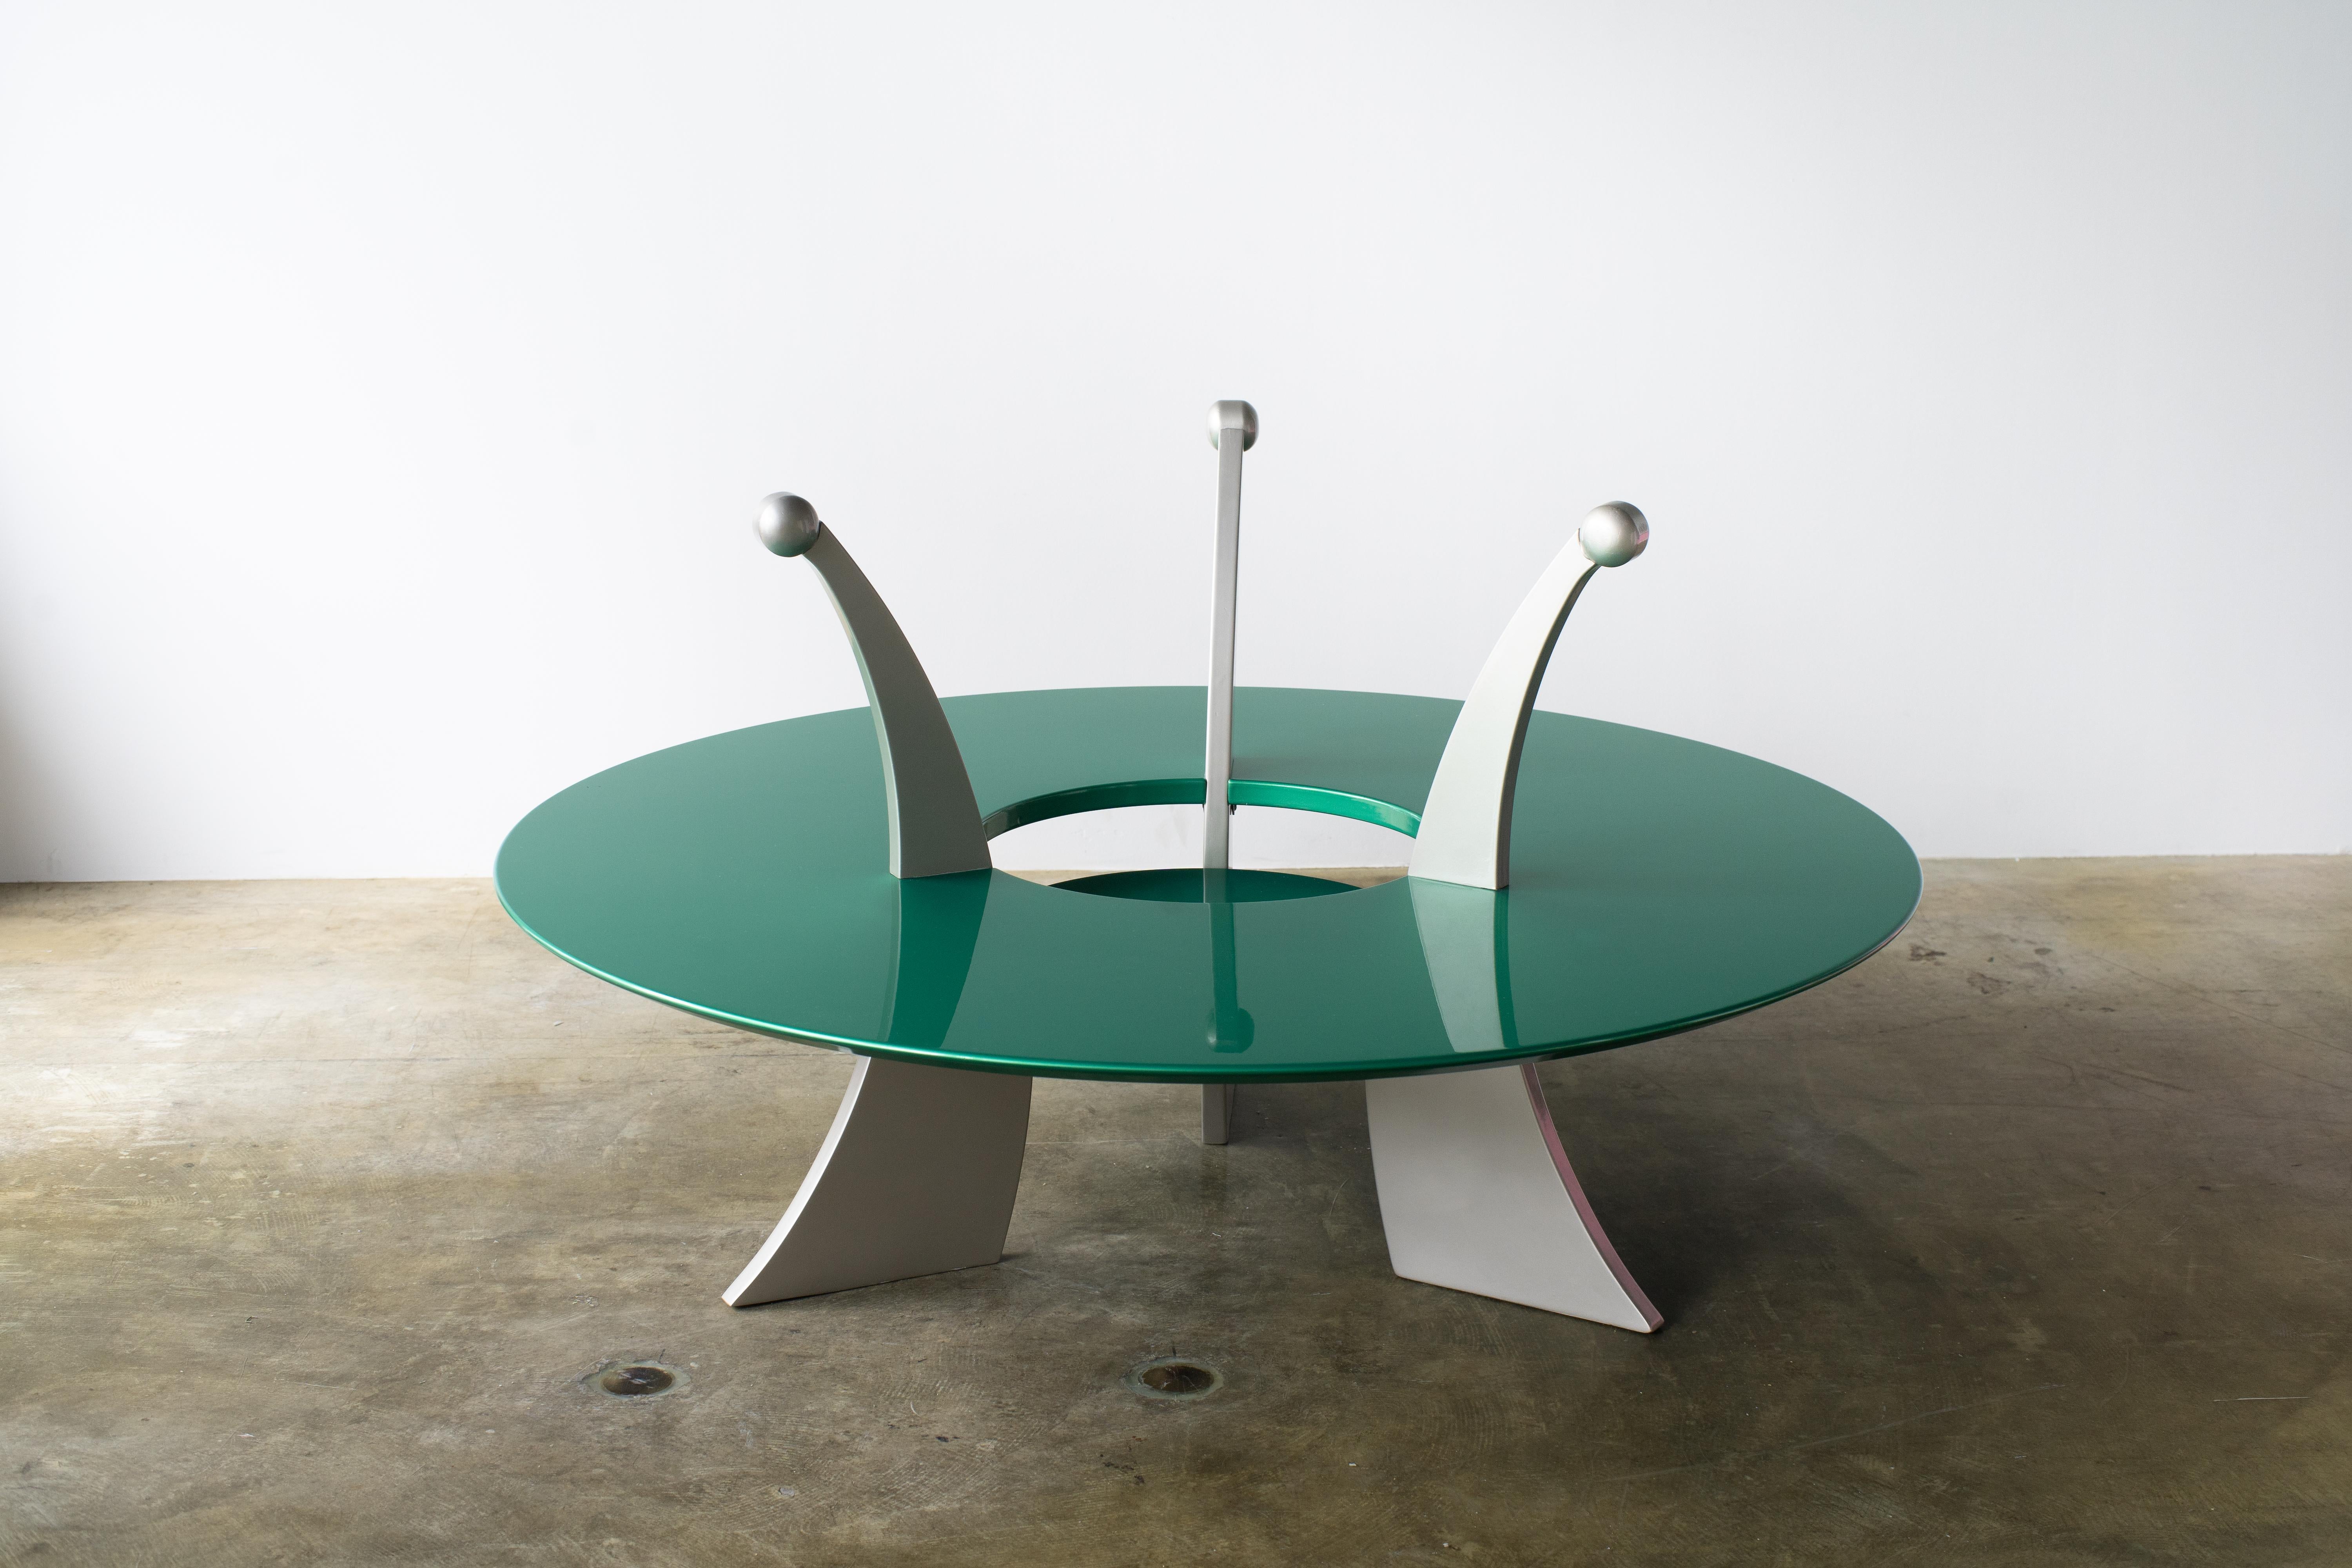 Orchedia Couchtisch
Entworfen von Massimo Morozzi für Mazzei. Glitzerndes Grün und Silber.
Neu lackiert und neuwertig.
Maße: Tischhöhe 36cm/14.2